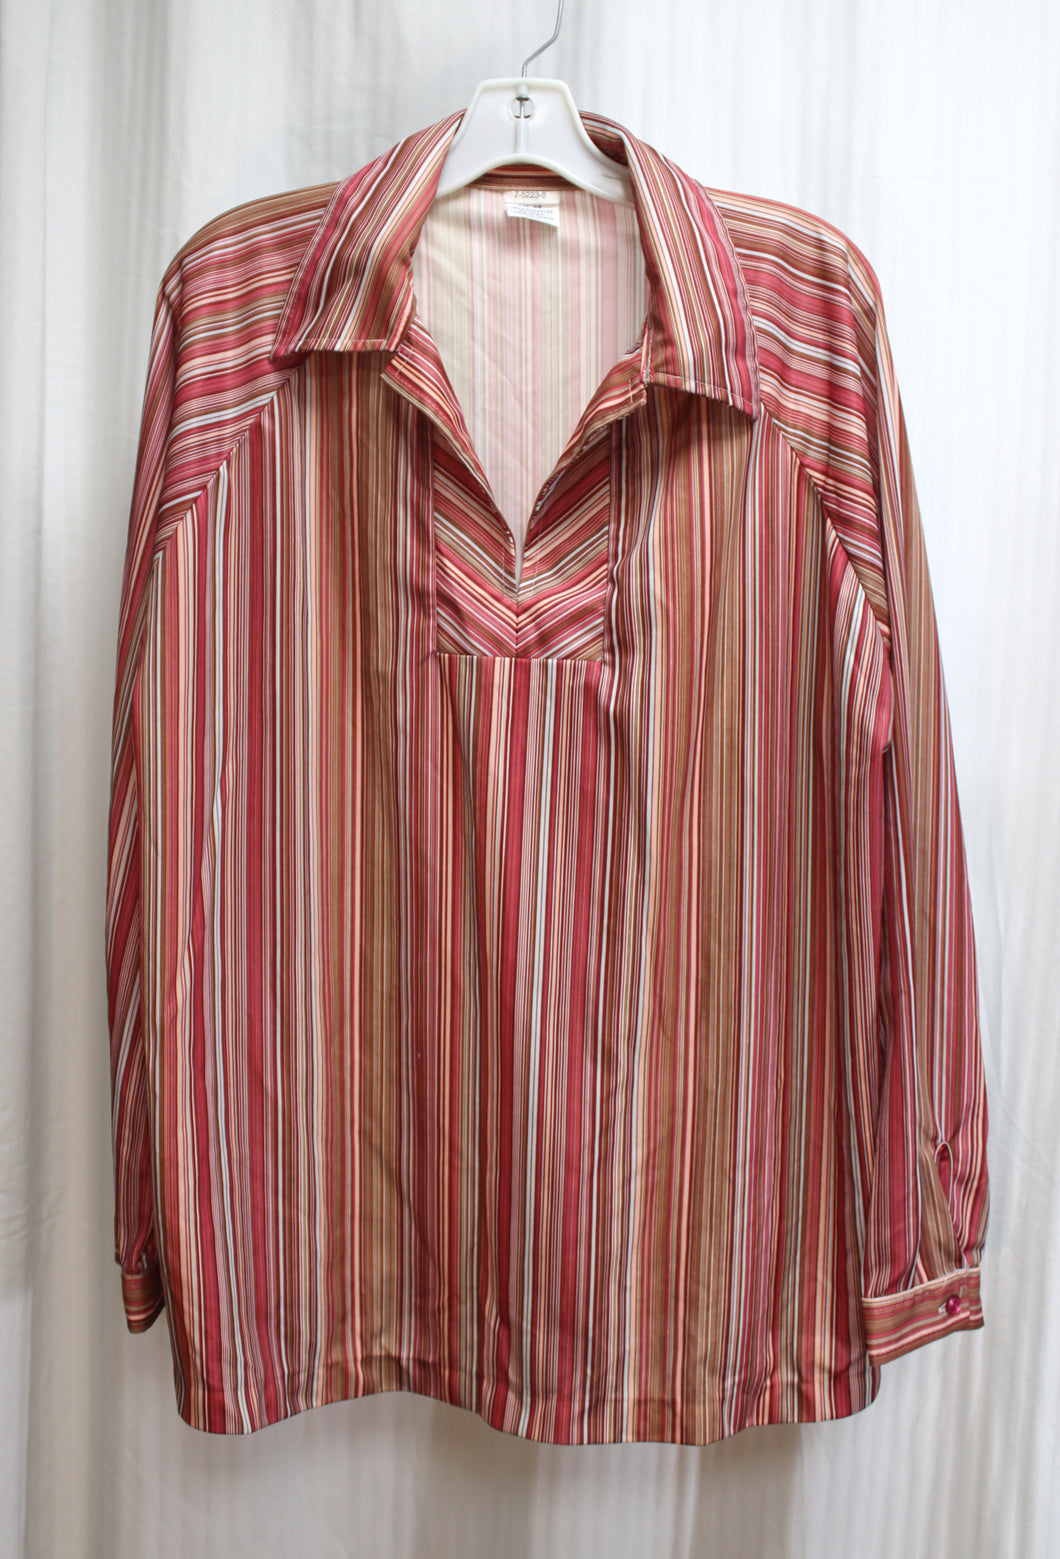 Vintage - Red & Warmed Tones, V-Neck Pullover Striped Shirt - Size 44 (vintage See Measurements)